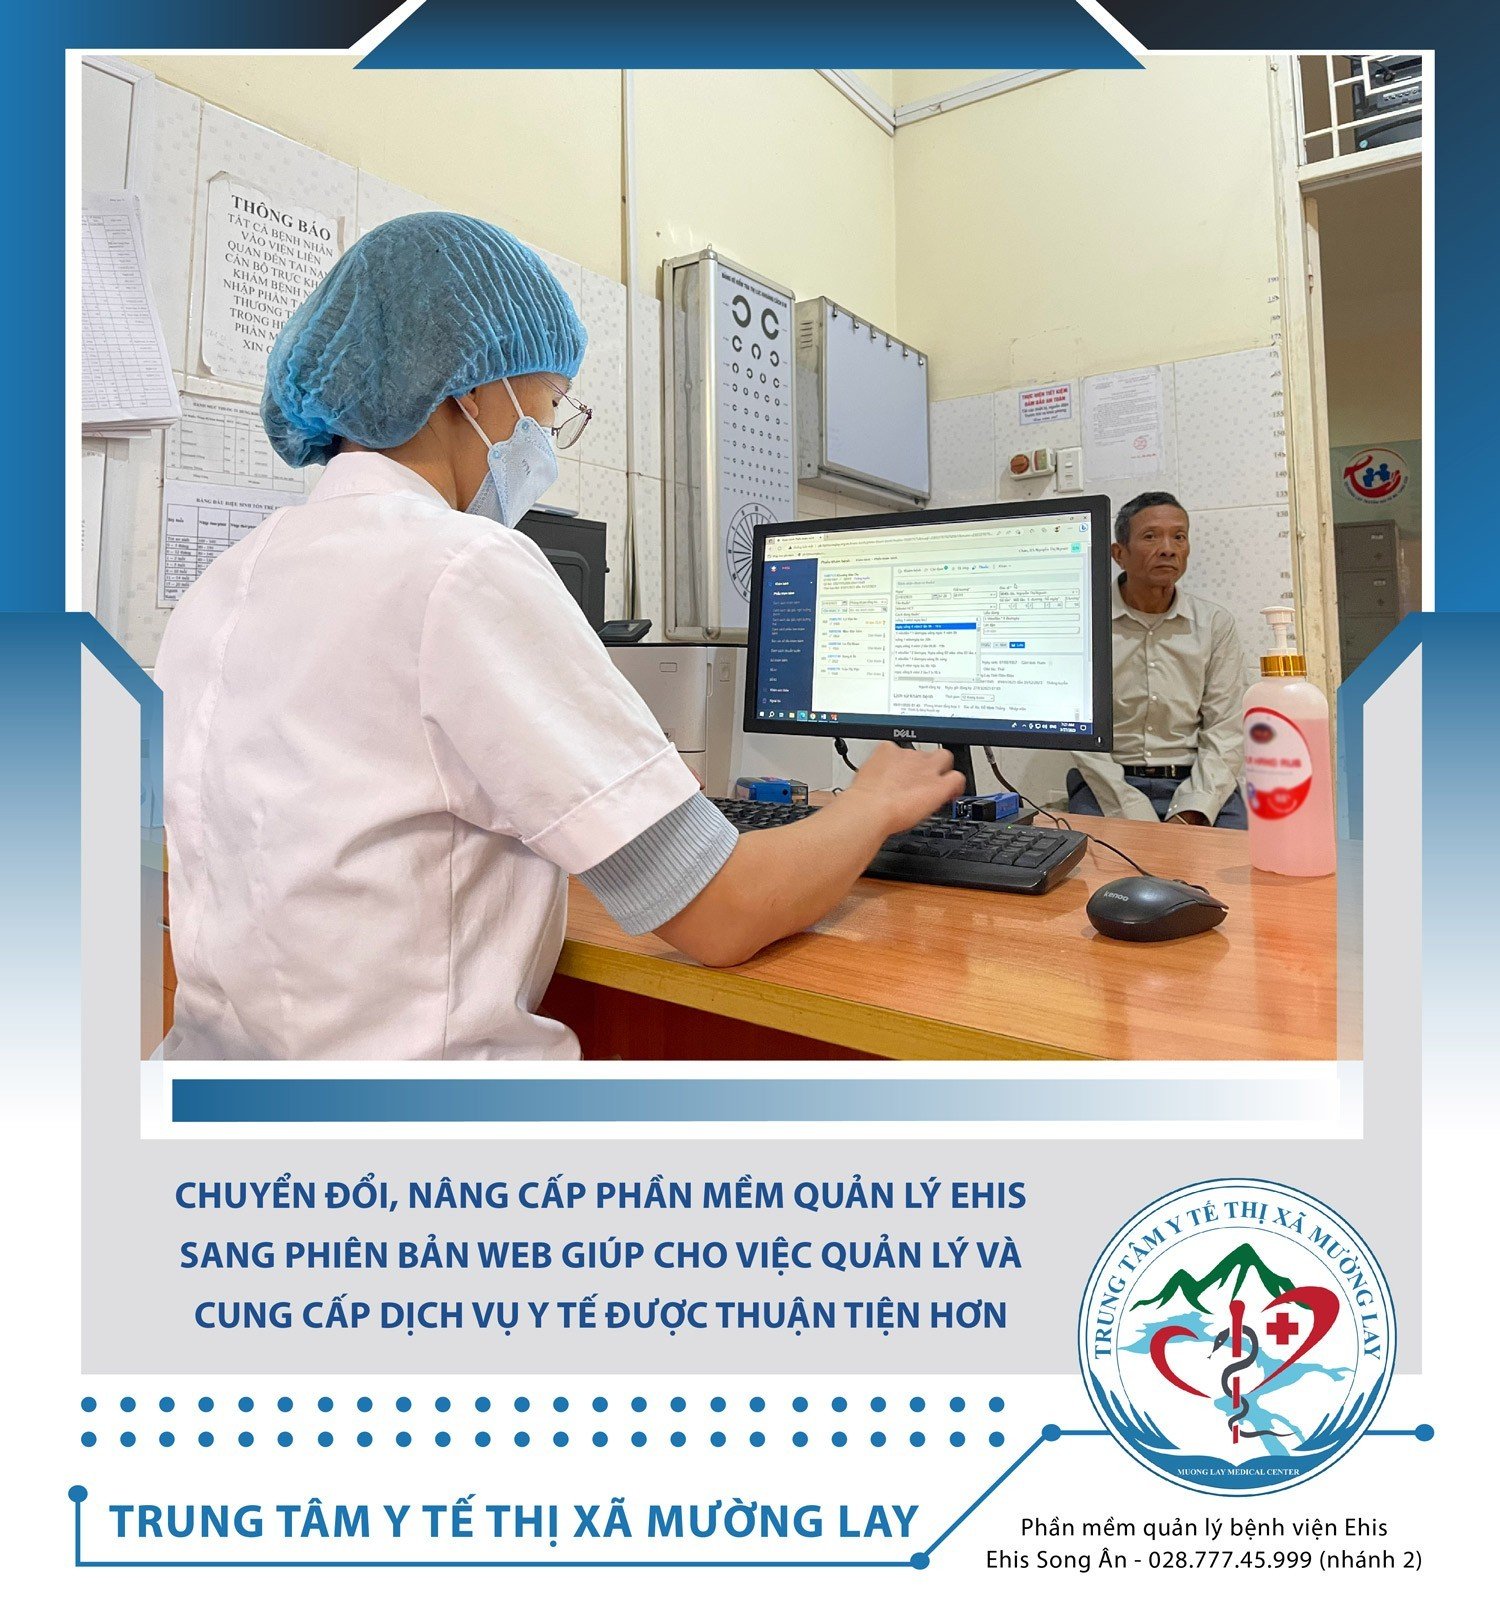  Trung tâm Y tế thị xã Mường Lay triển khai một số giải pháp công nghệ nhằm cải thiện quản lý và cung cấp dịch vụ Y tế cho người dân